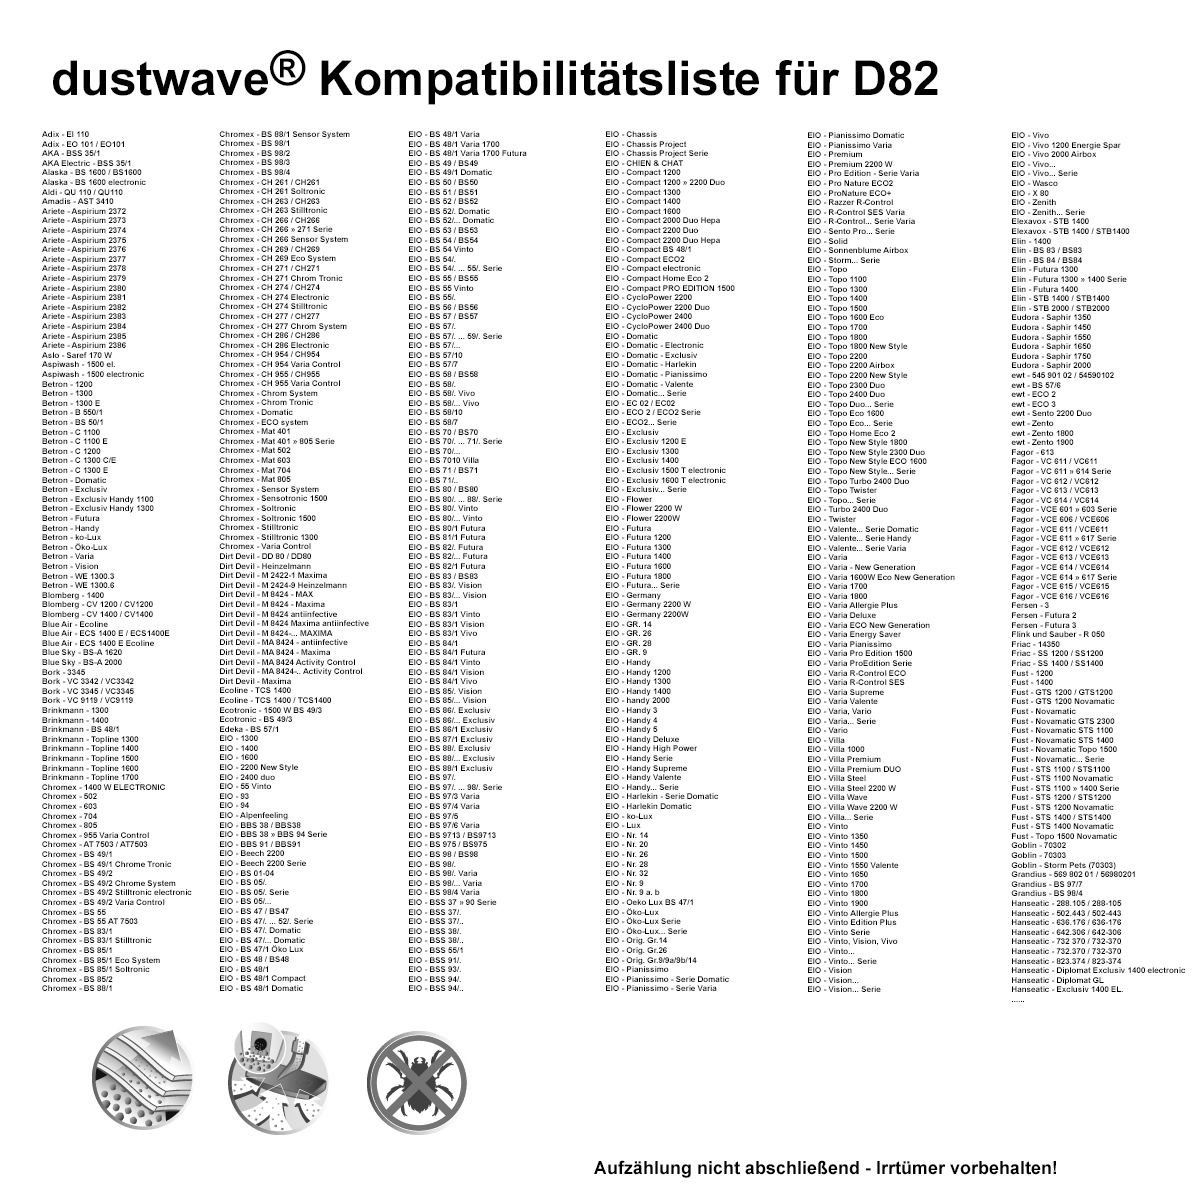 Dustwave® 10 Staubsaugerbeutel für Amadis AST 3410 / AST3410 - hocheffizient mit Hygieneverschluss - Made in Germany